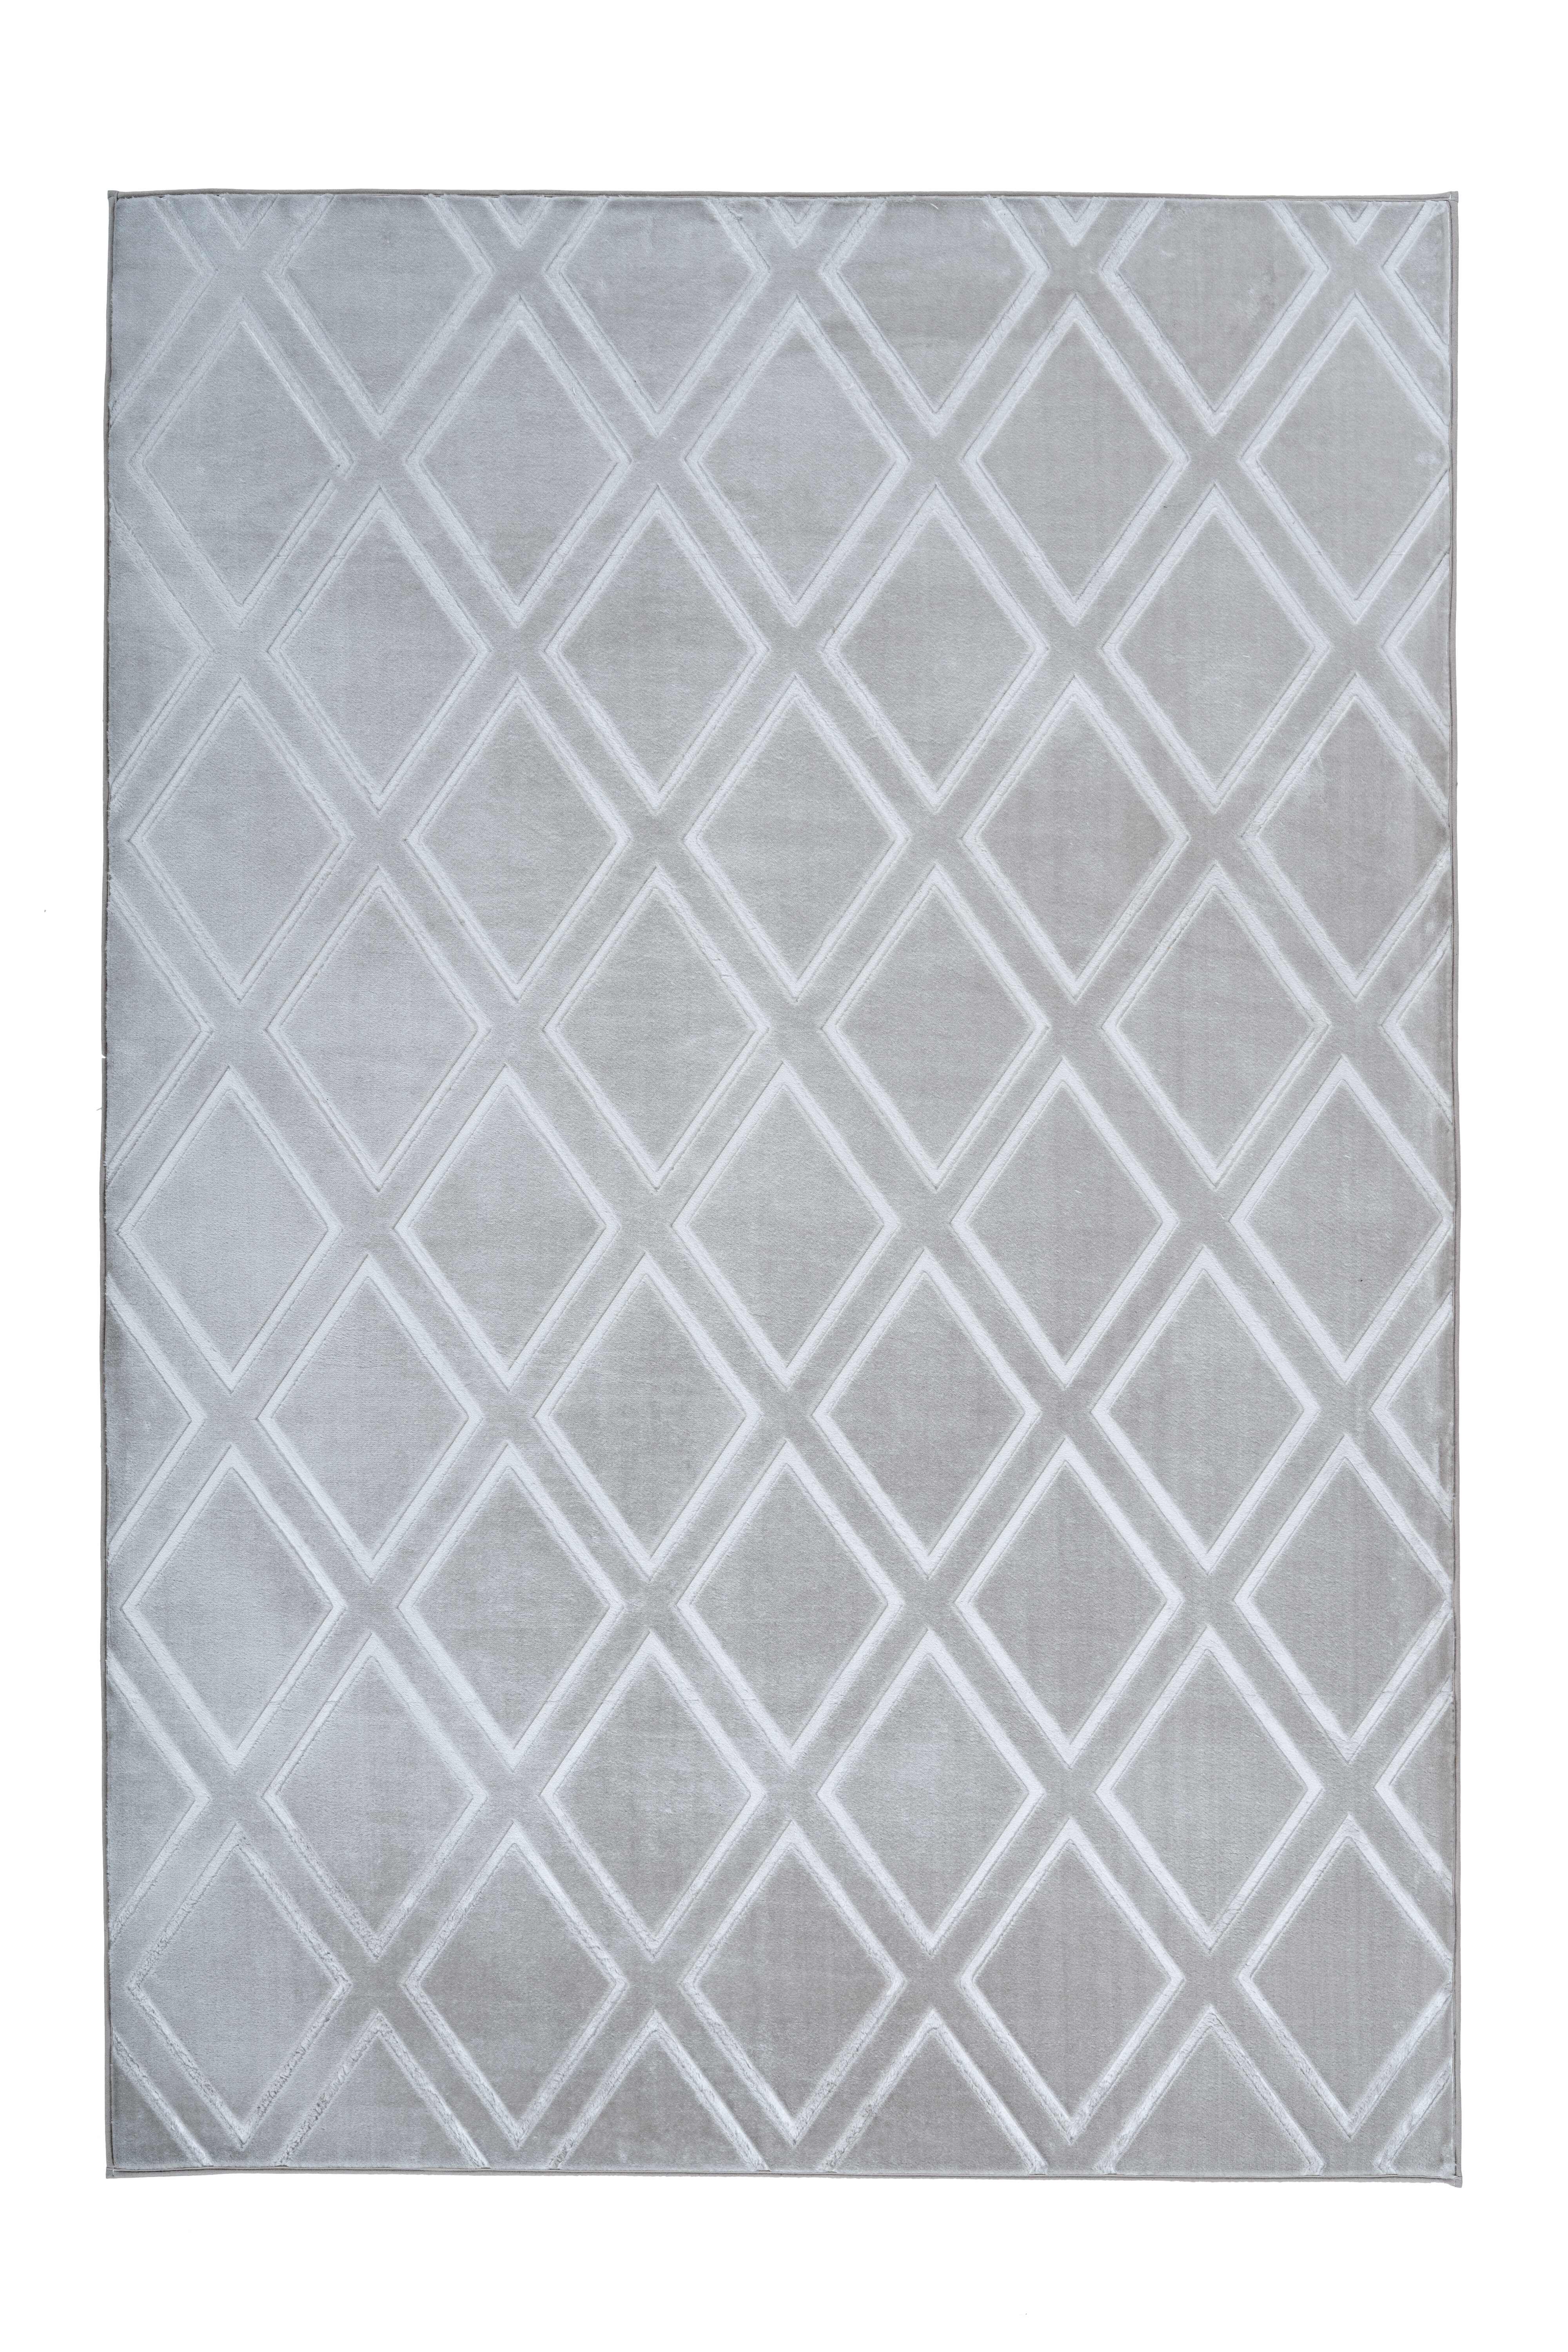 Kayoom Vloerkleed 'Monroe 300' kleur grijs, 120 x 170cm